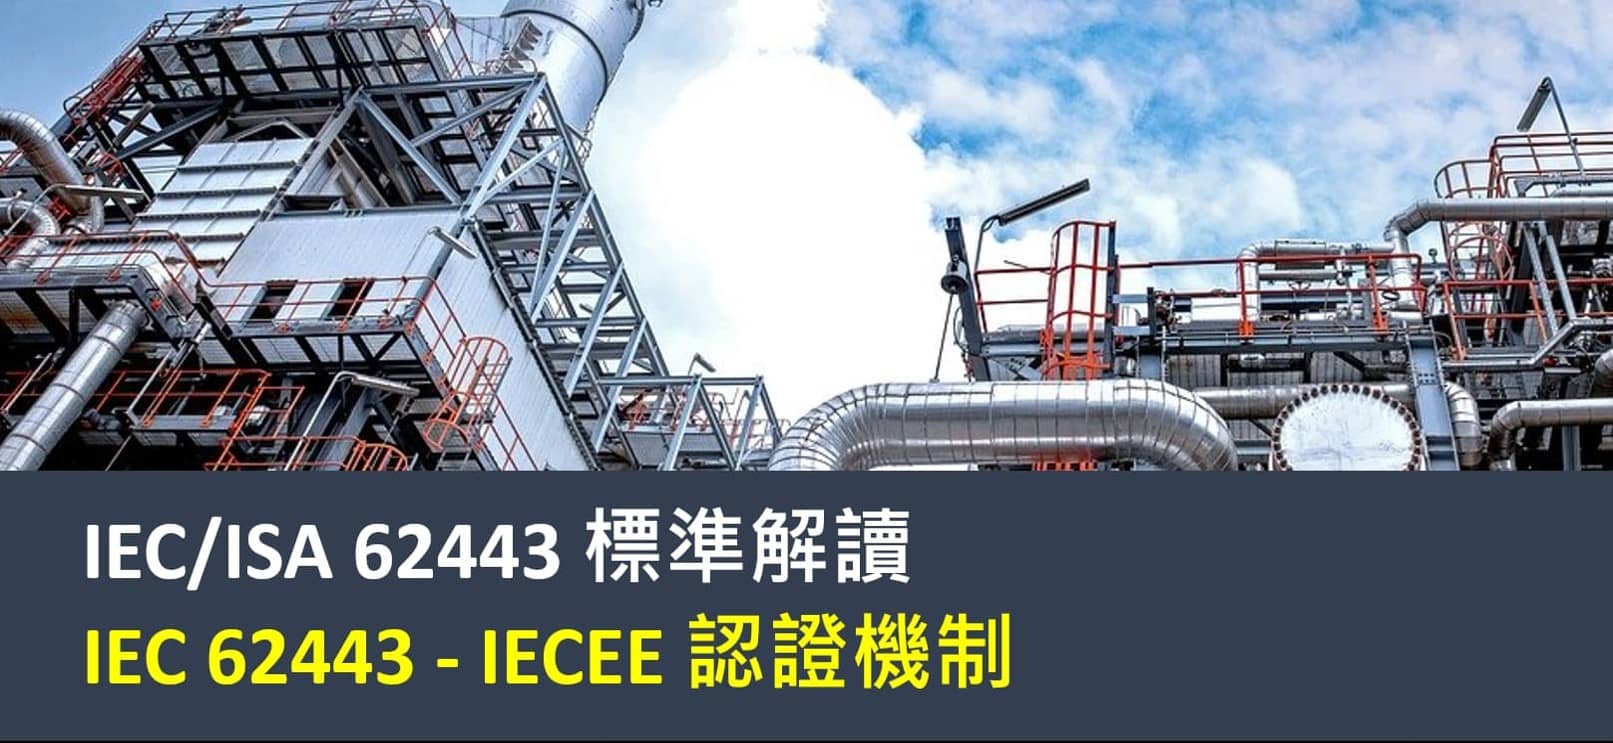 IEC 62443 - IECEE 認證機制